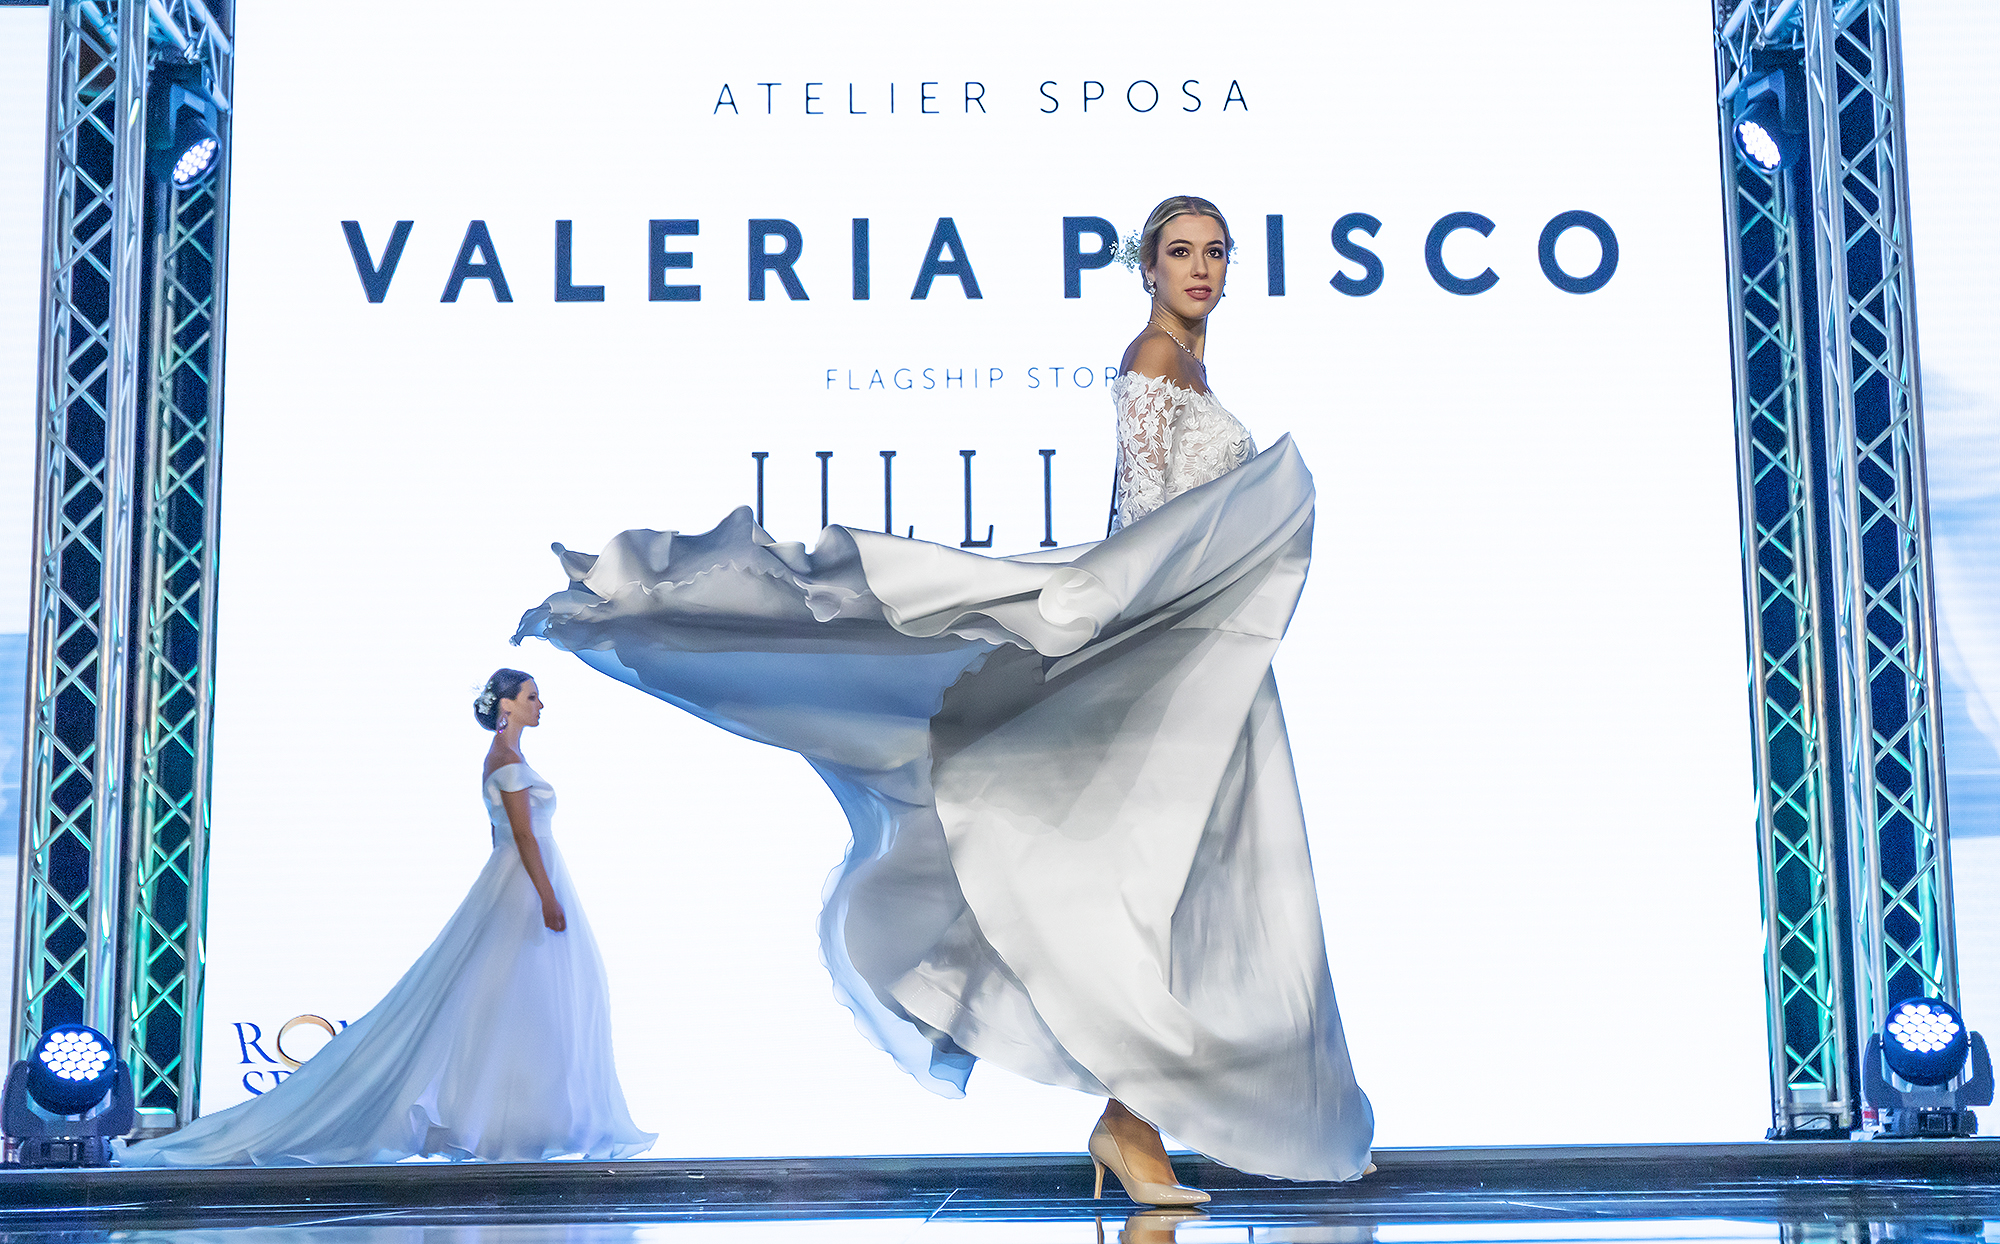 Valeria Prisco Atelier  per Jillian a Roma Sposa 2021